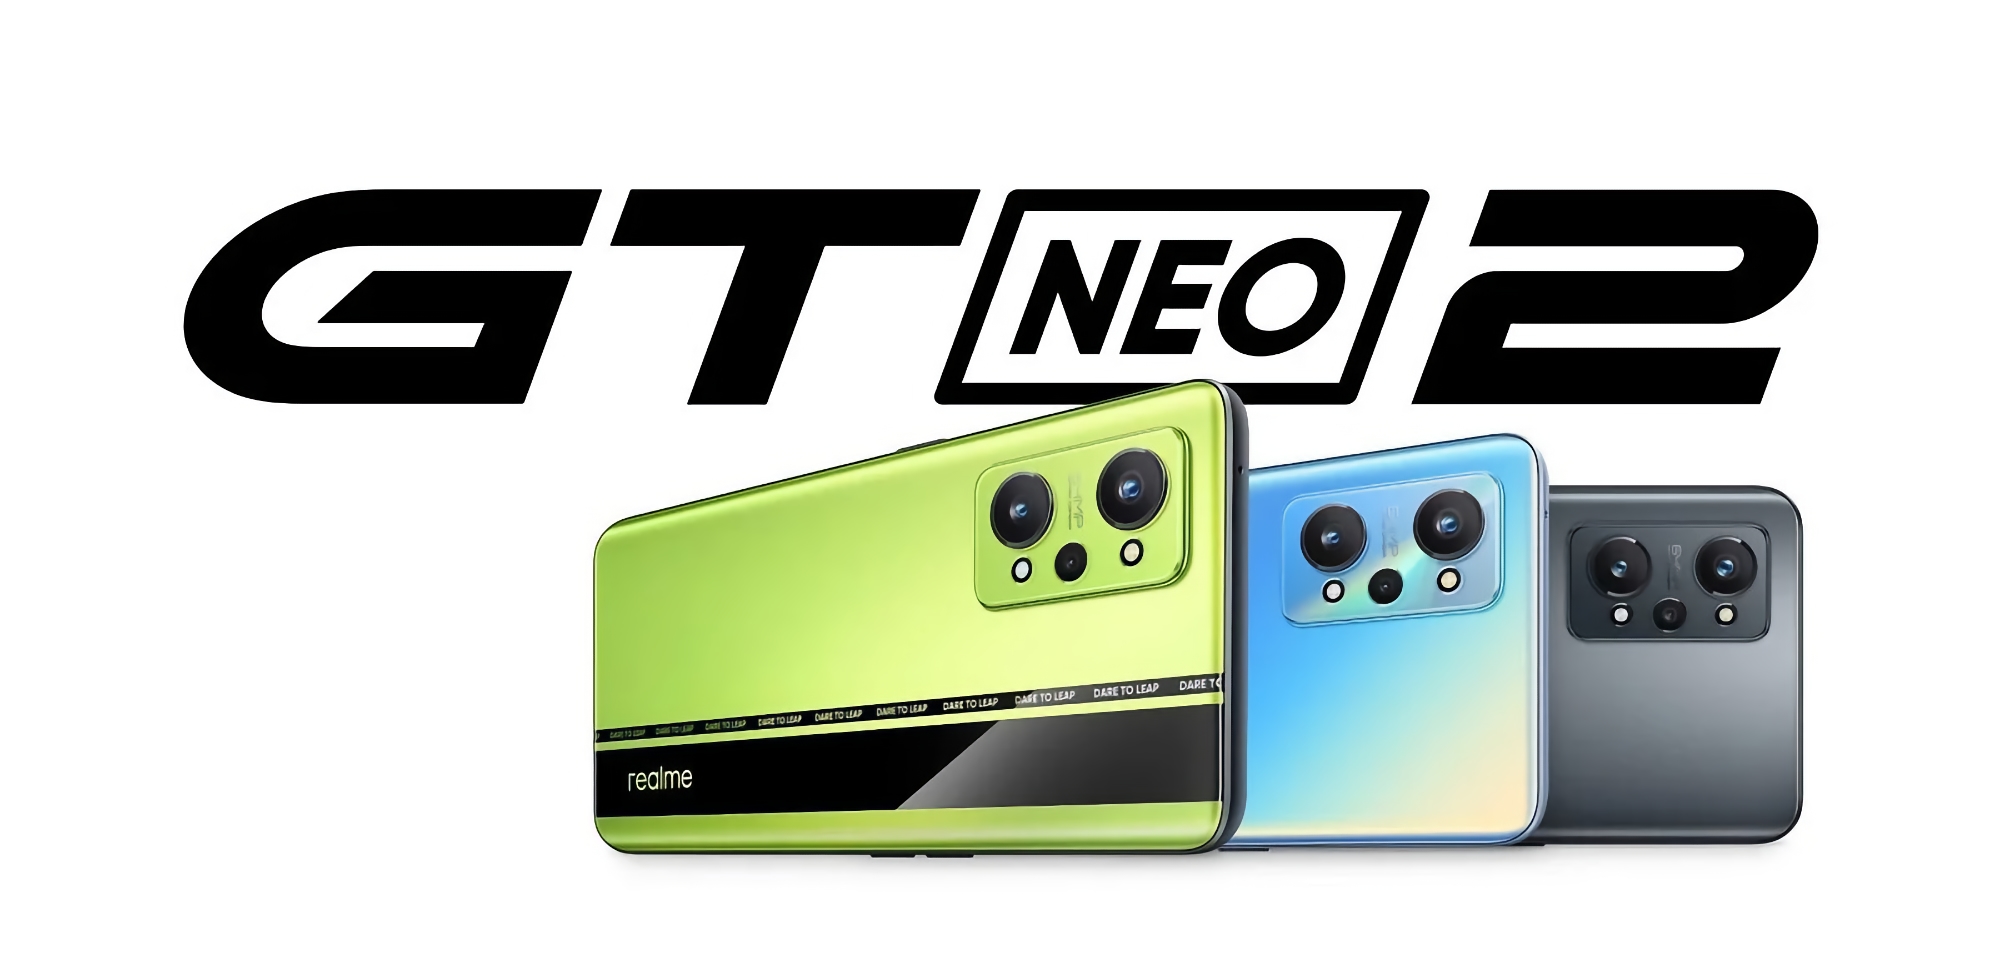 To już oficjalne: Realme GT Neo 2 z układem Snapdragon 870 i potrójnym aparatem 64 MP zaprezentowany w Europie 15 listopada